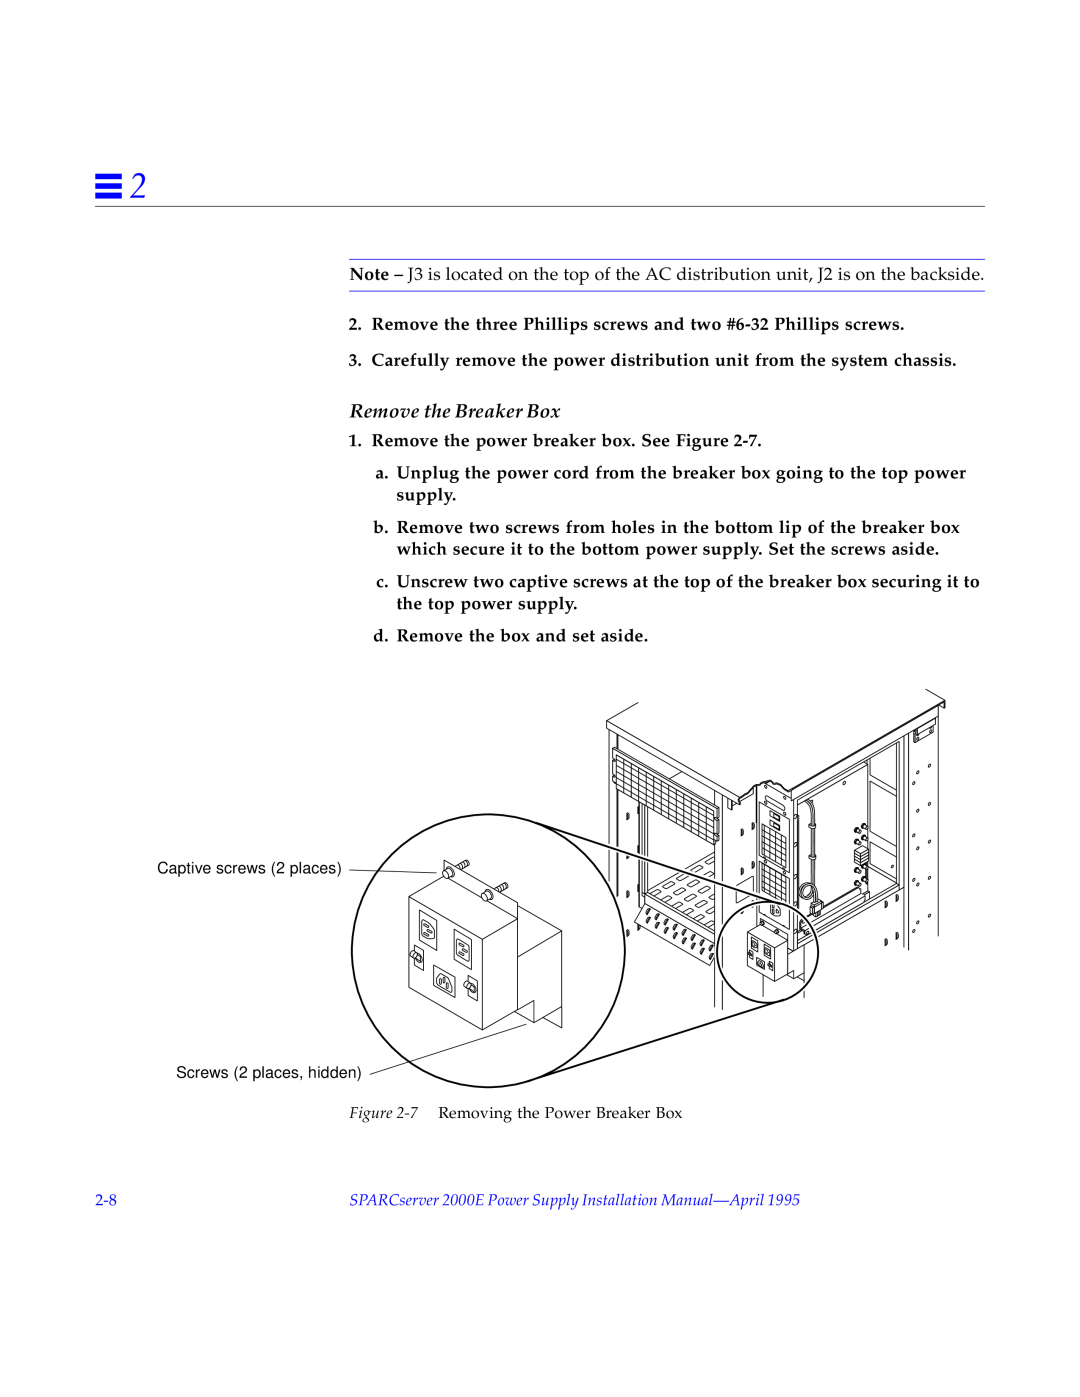 Sun Microsystems 2000E installation manual Remove the Breaker Box 